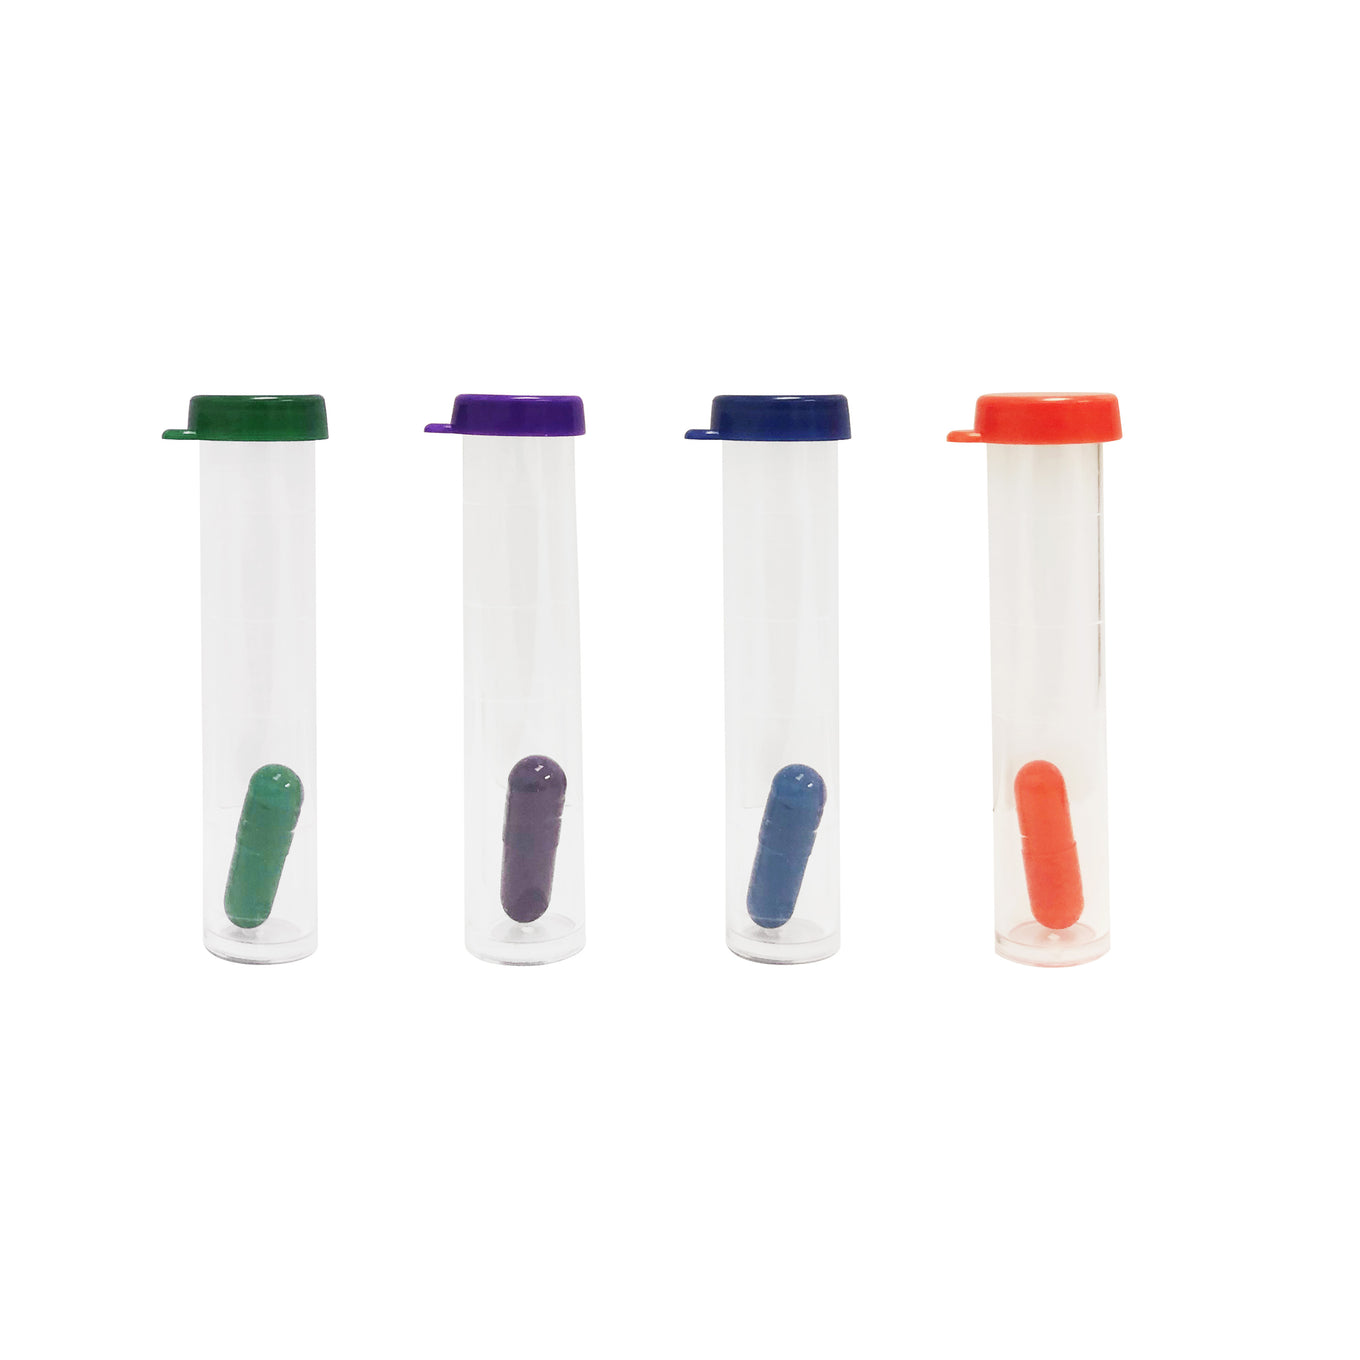 Soil testing kit tubes, green for pH, orange for Potash, purple for Nitrogen, blue for phosphorus.